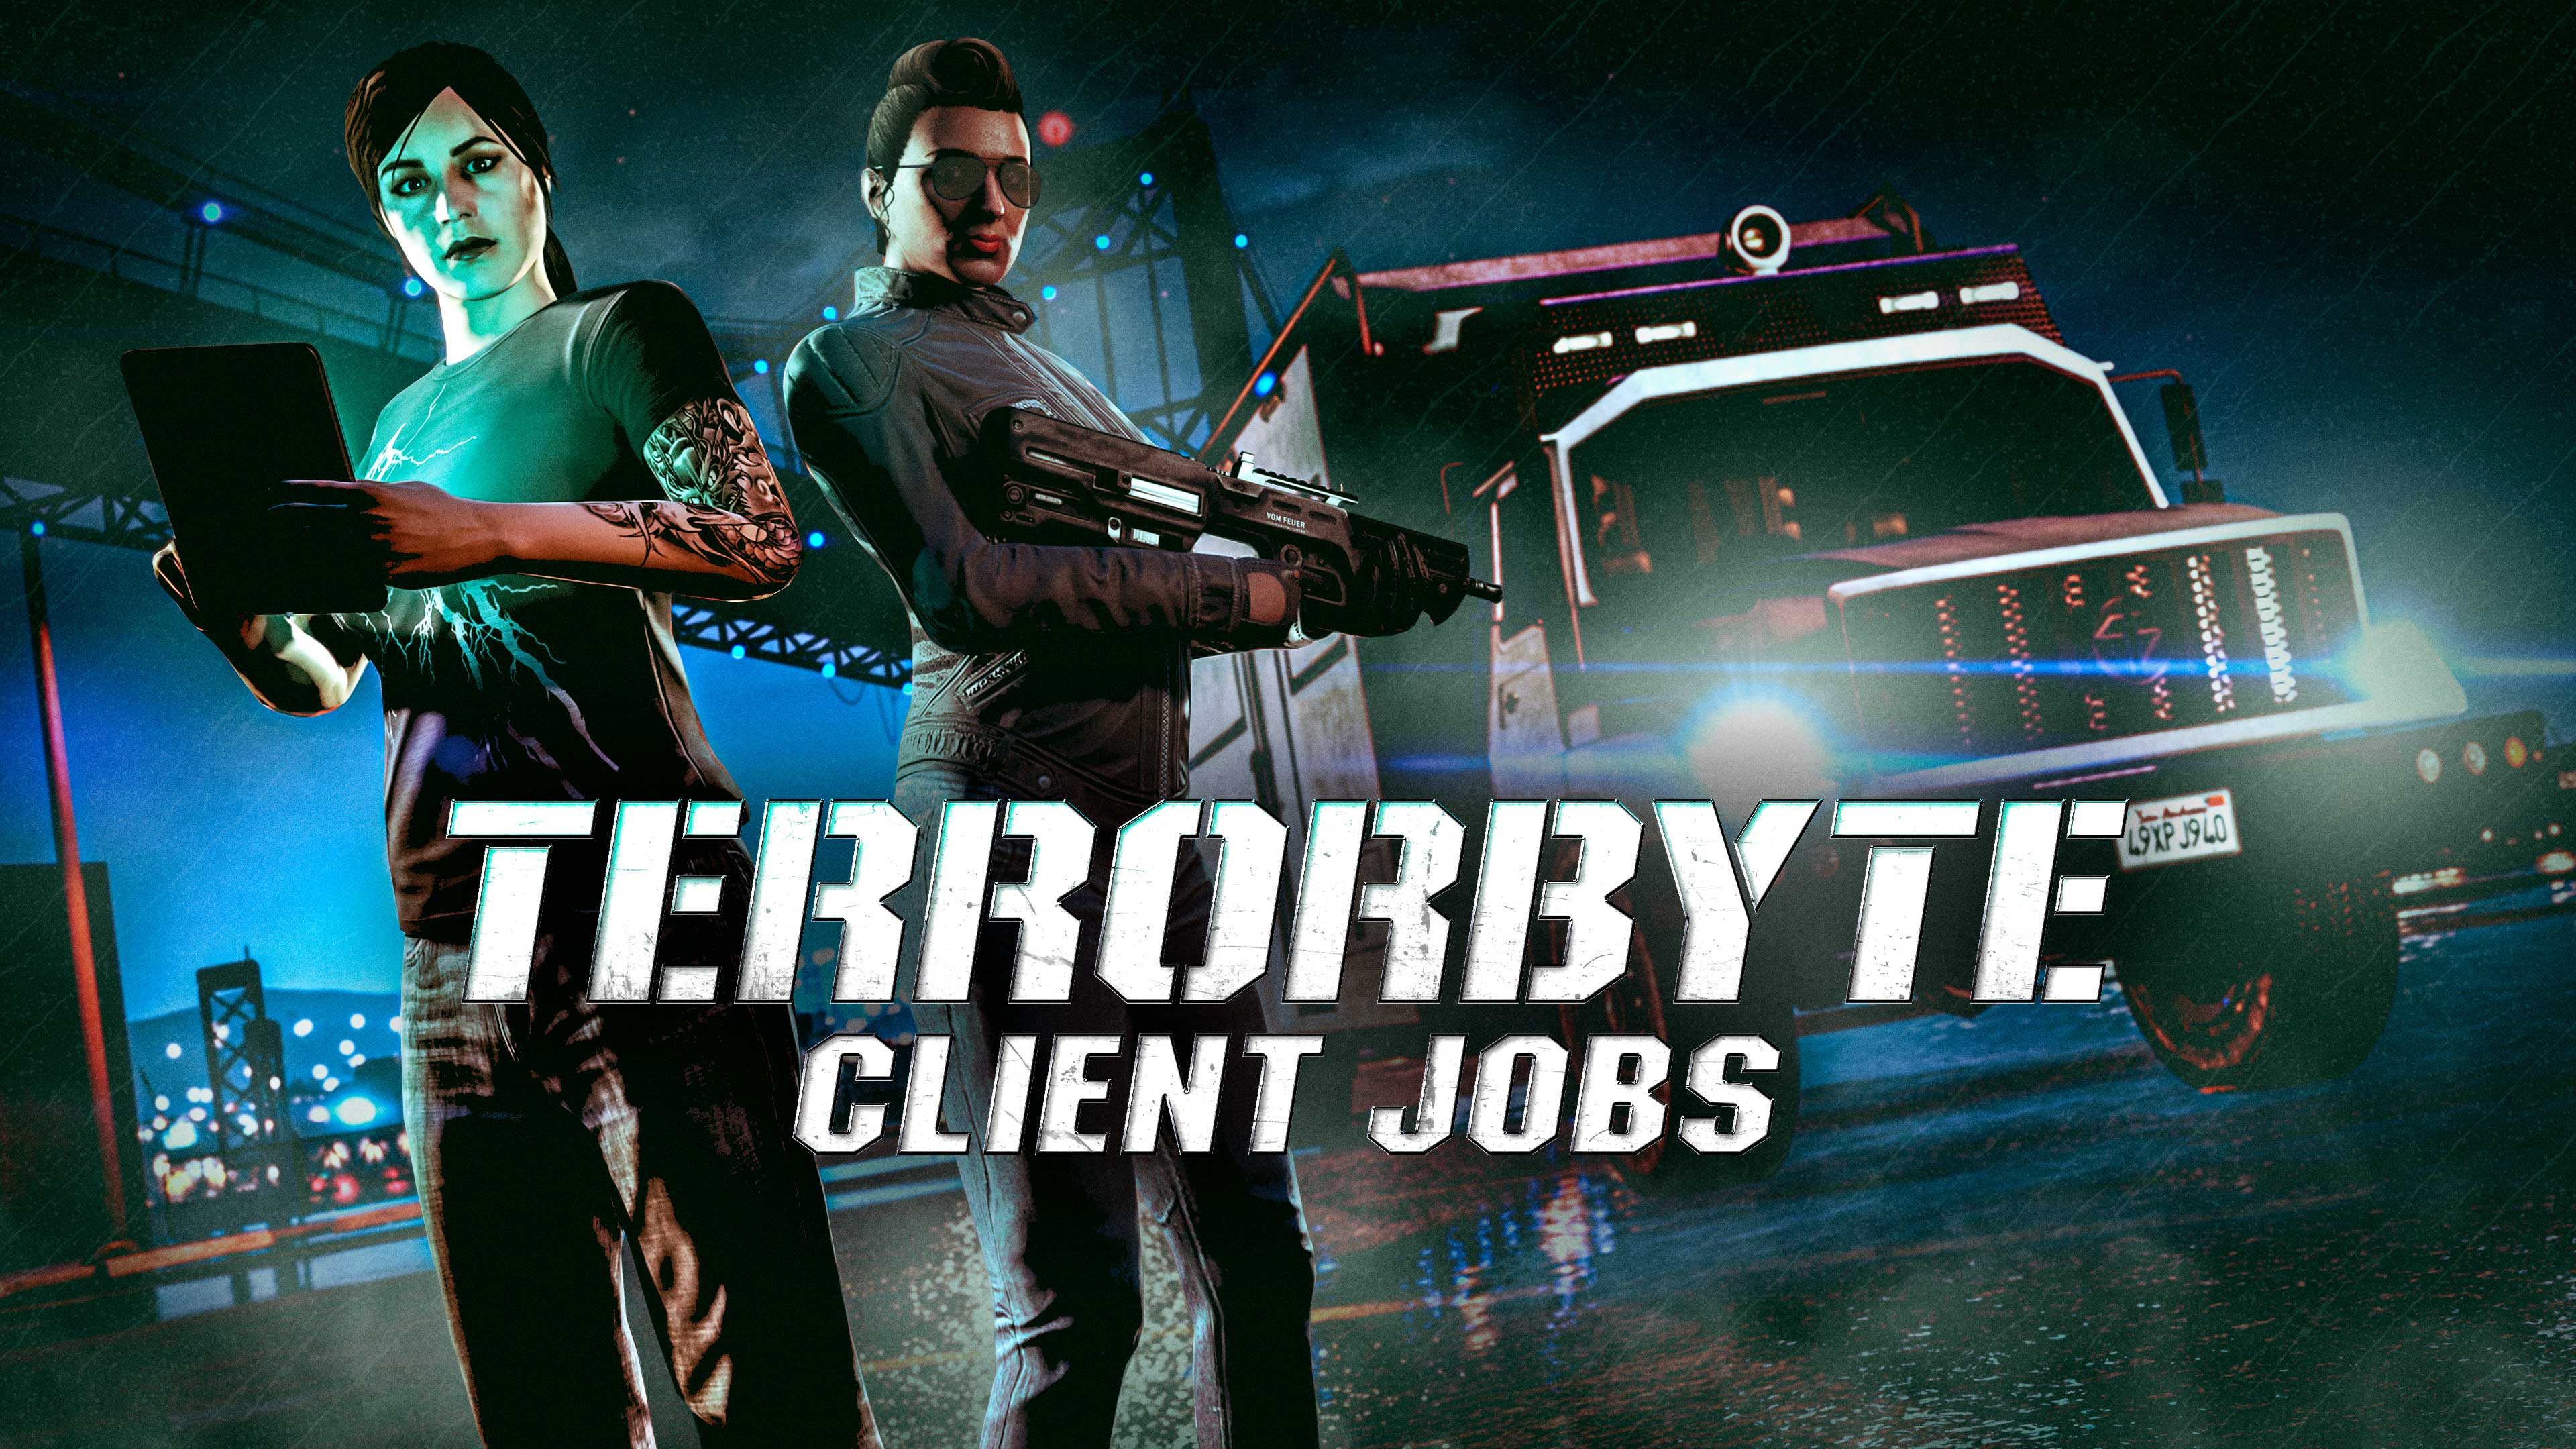 Pôster do evento Serviços de Cliente do Terrorbyte. Dois personagens de GTA Online estão em pé perto de um caminhão Benefactor Terrorbyte. Um está armado com um rifle automático e o outro está segurando um tablet.